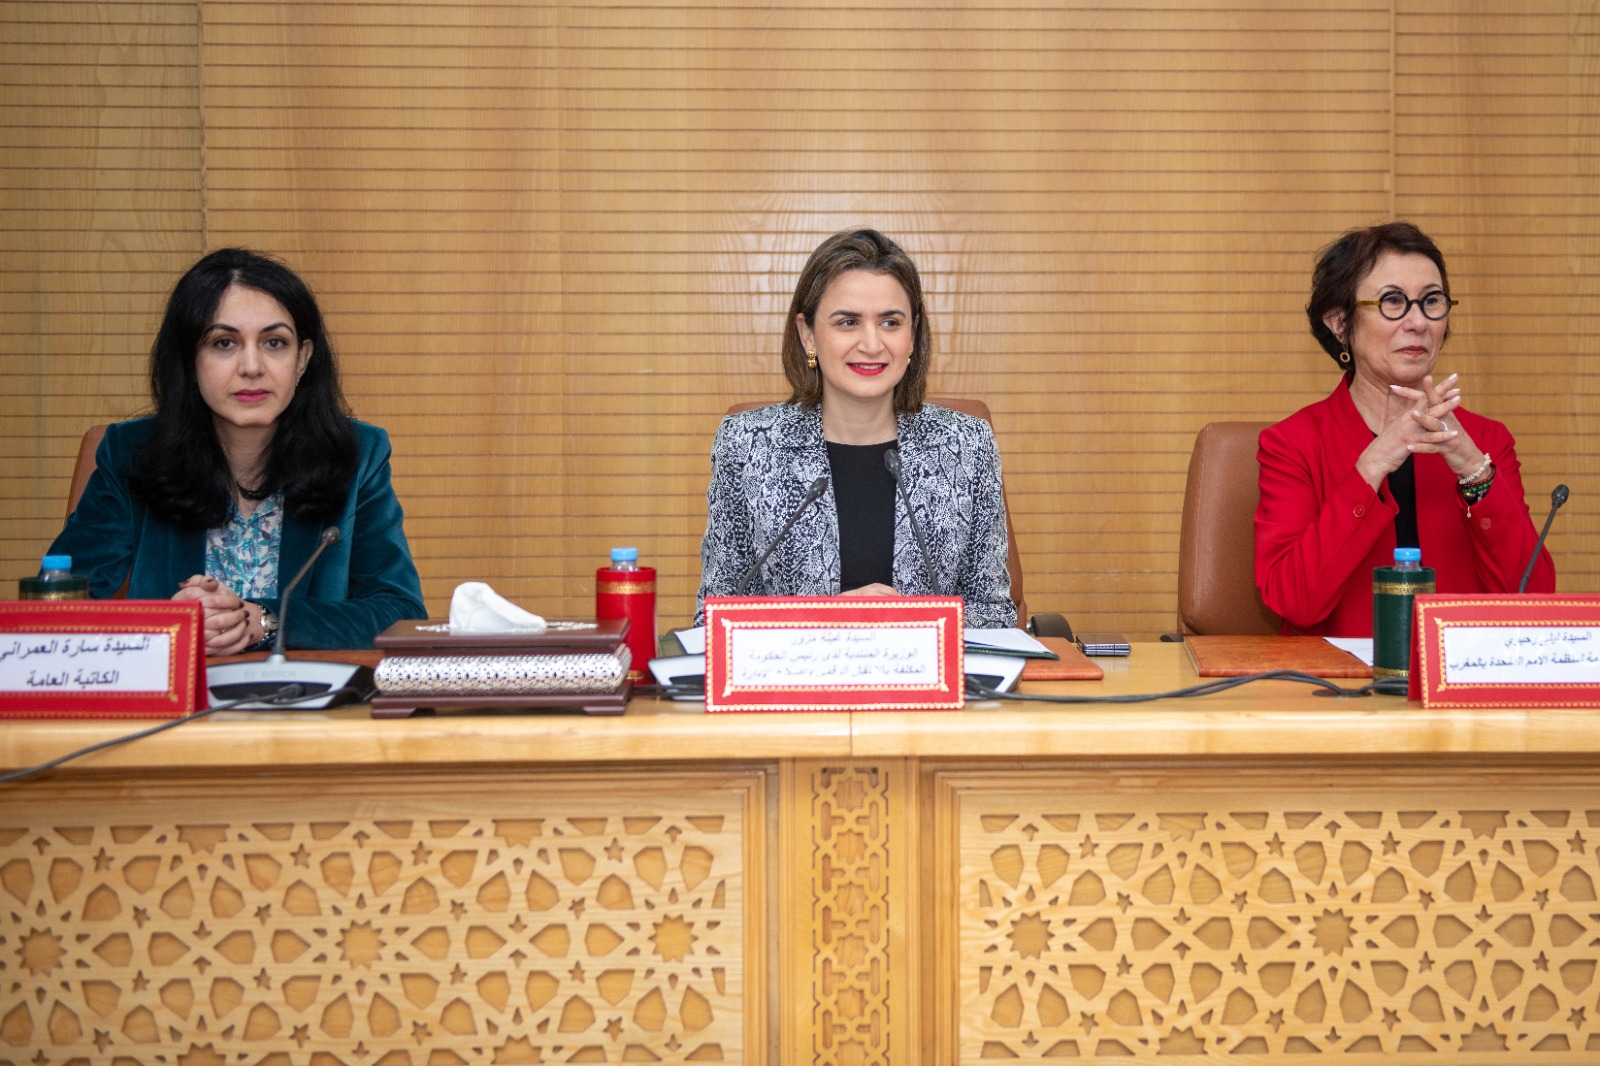 تخليد اليوم العالمي للمرأة: السيدة الوزيرة غيثة مزور تترأسُ لقاءً تواصلياً مع شبكة التشاور المشتركة بين الوزارات